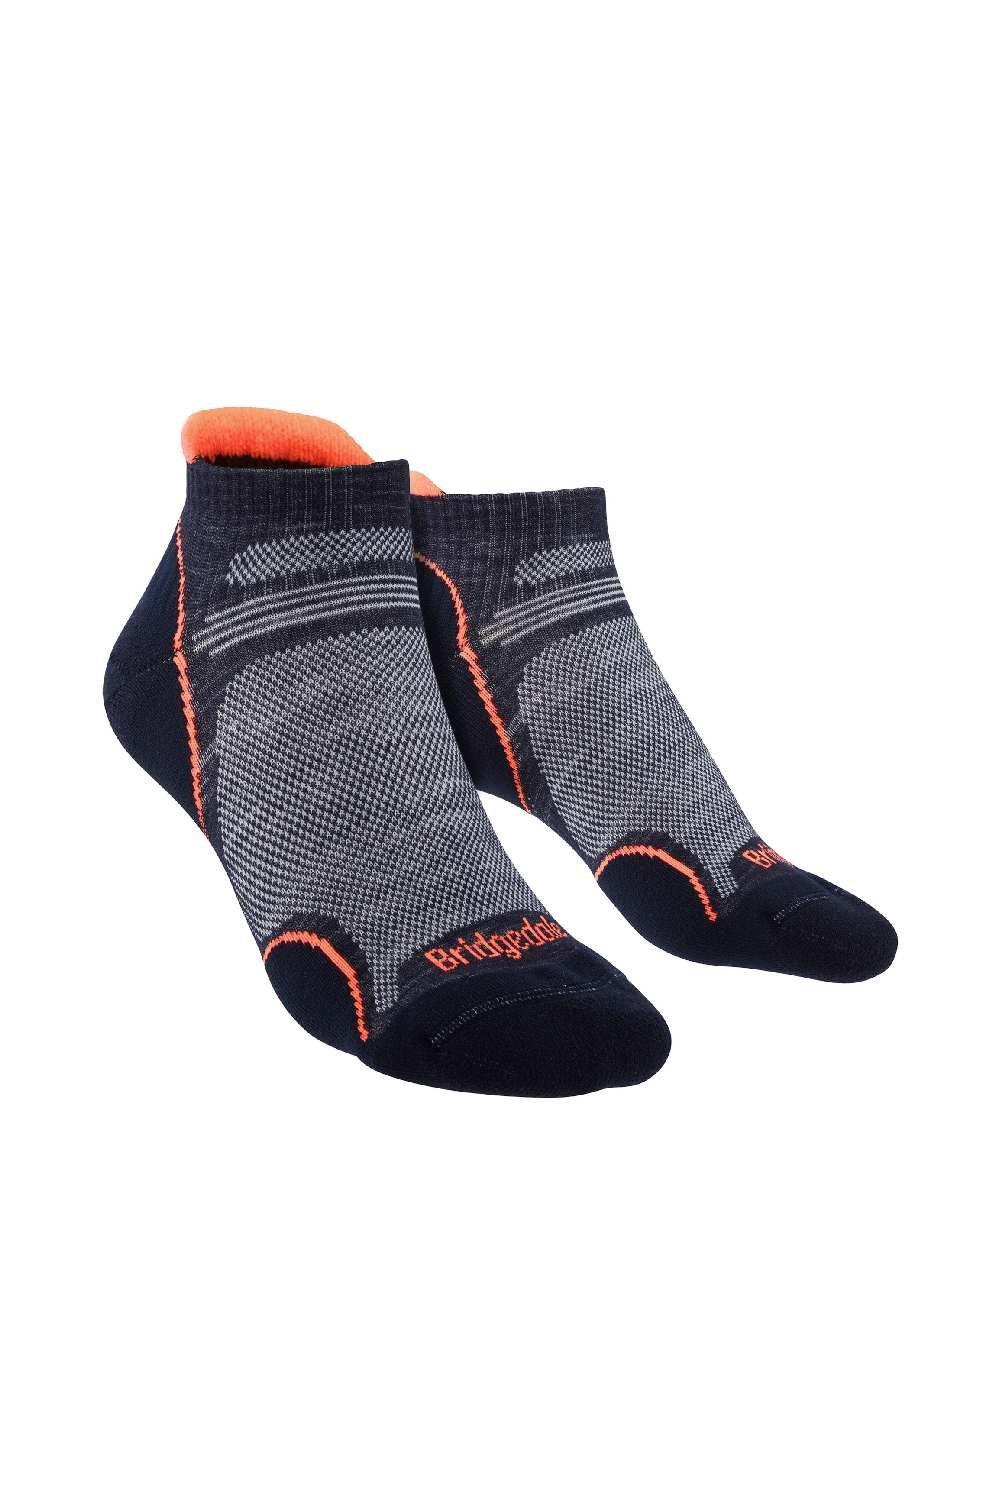 Merino Wool Hiking Ultralight T2 Performance Low Socks